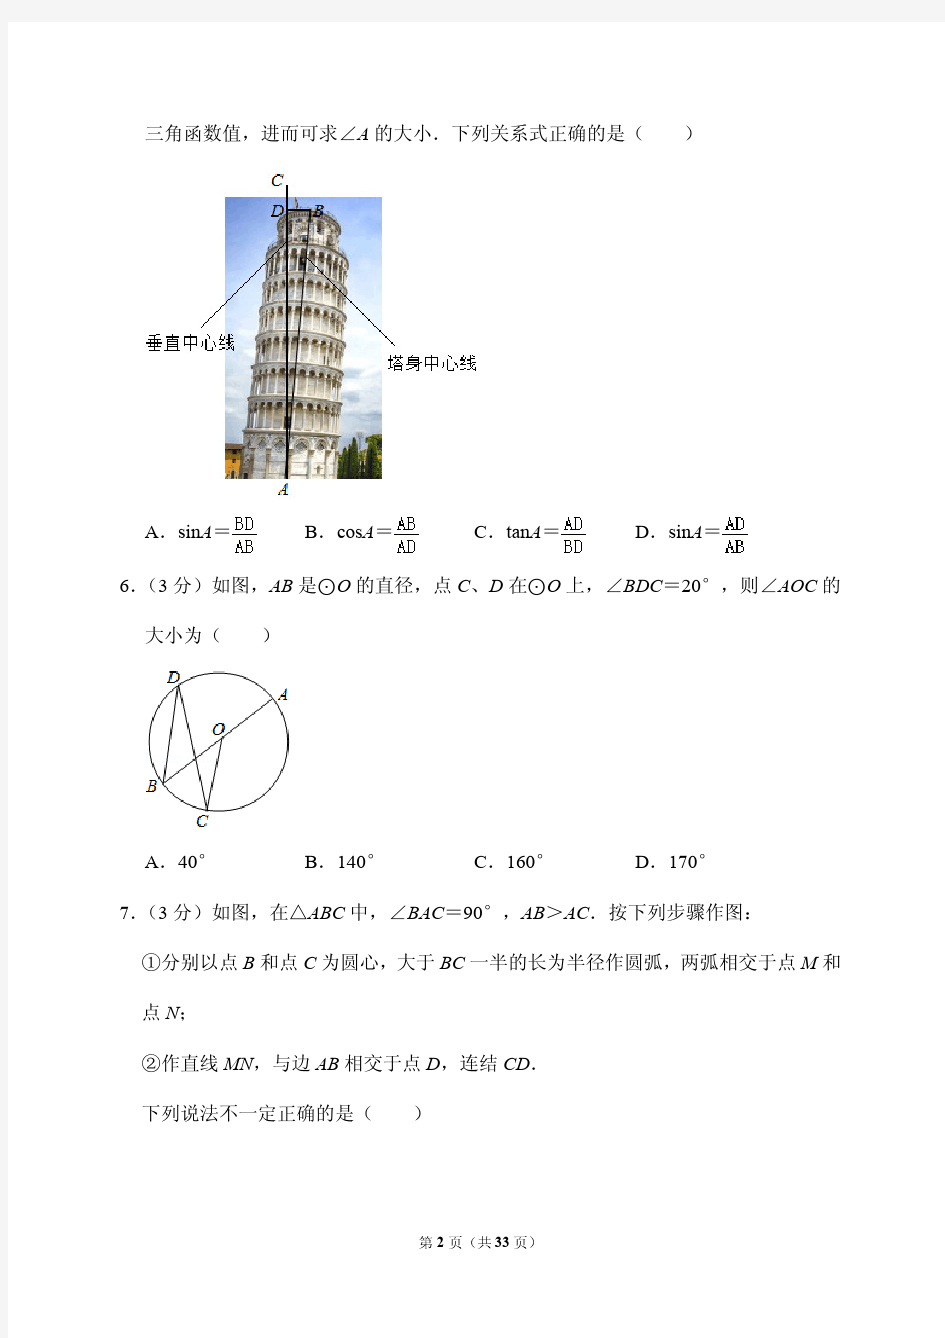 2020吉林省长春市中考数学试卷(附答案解析)